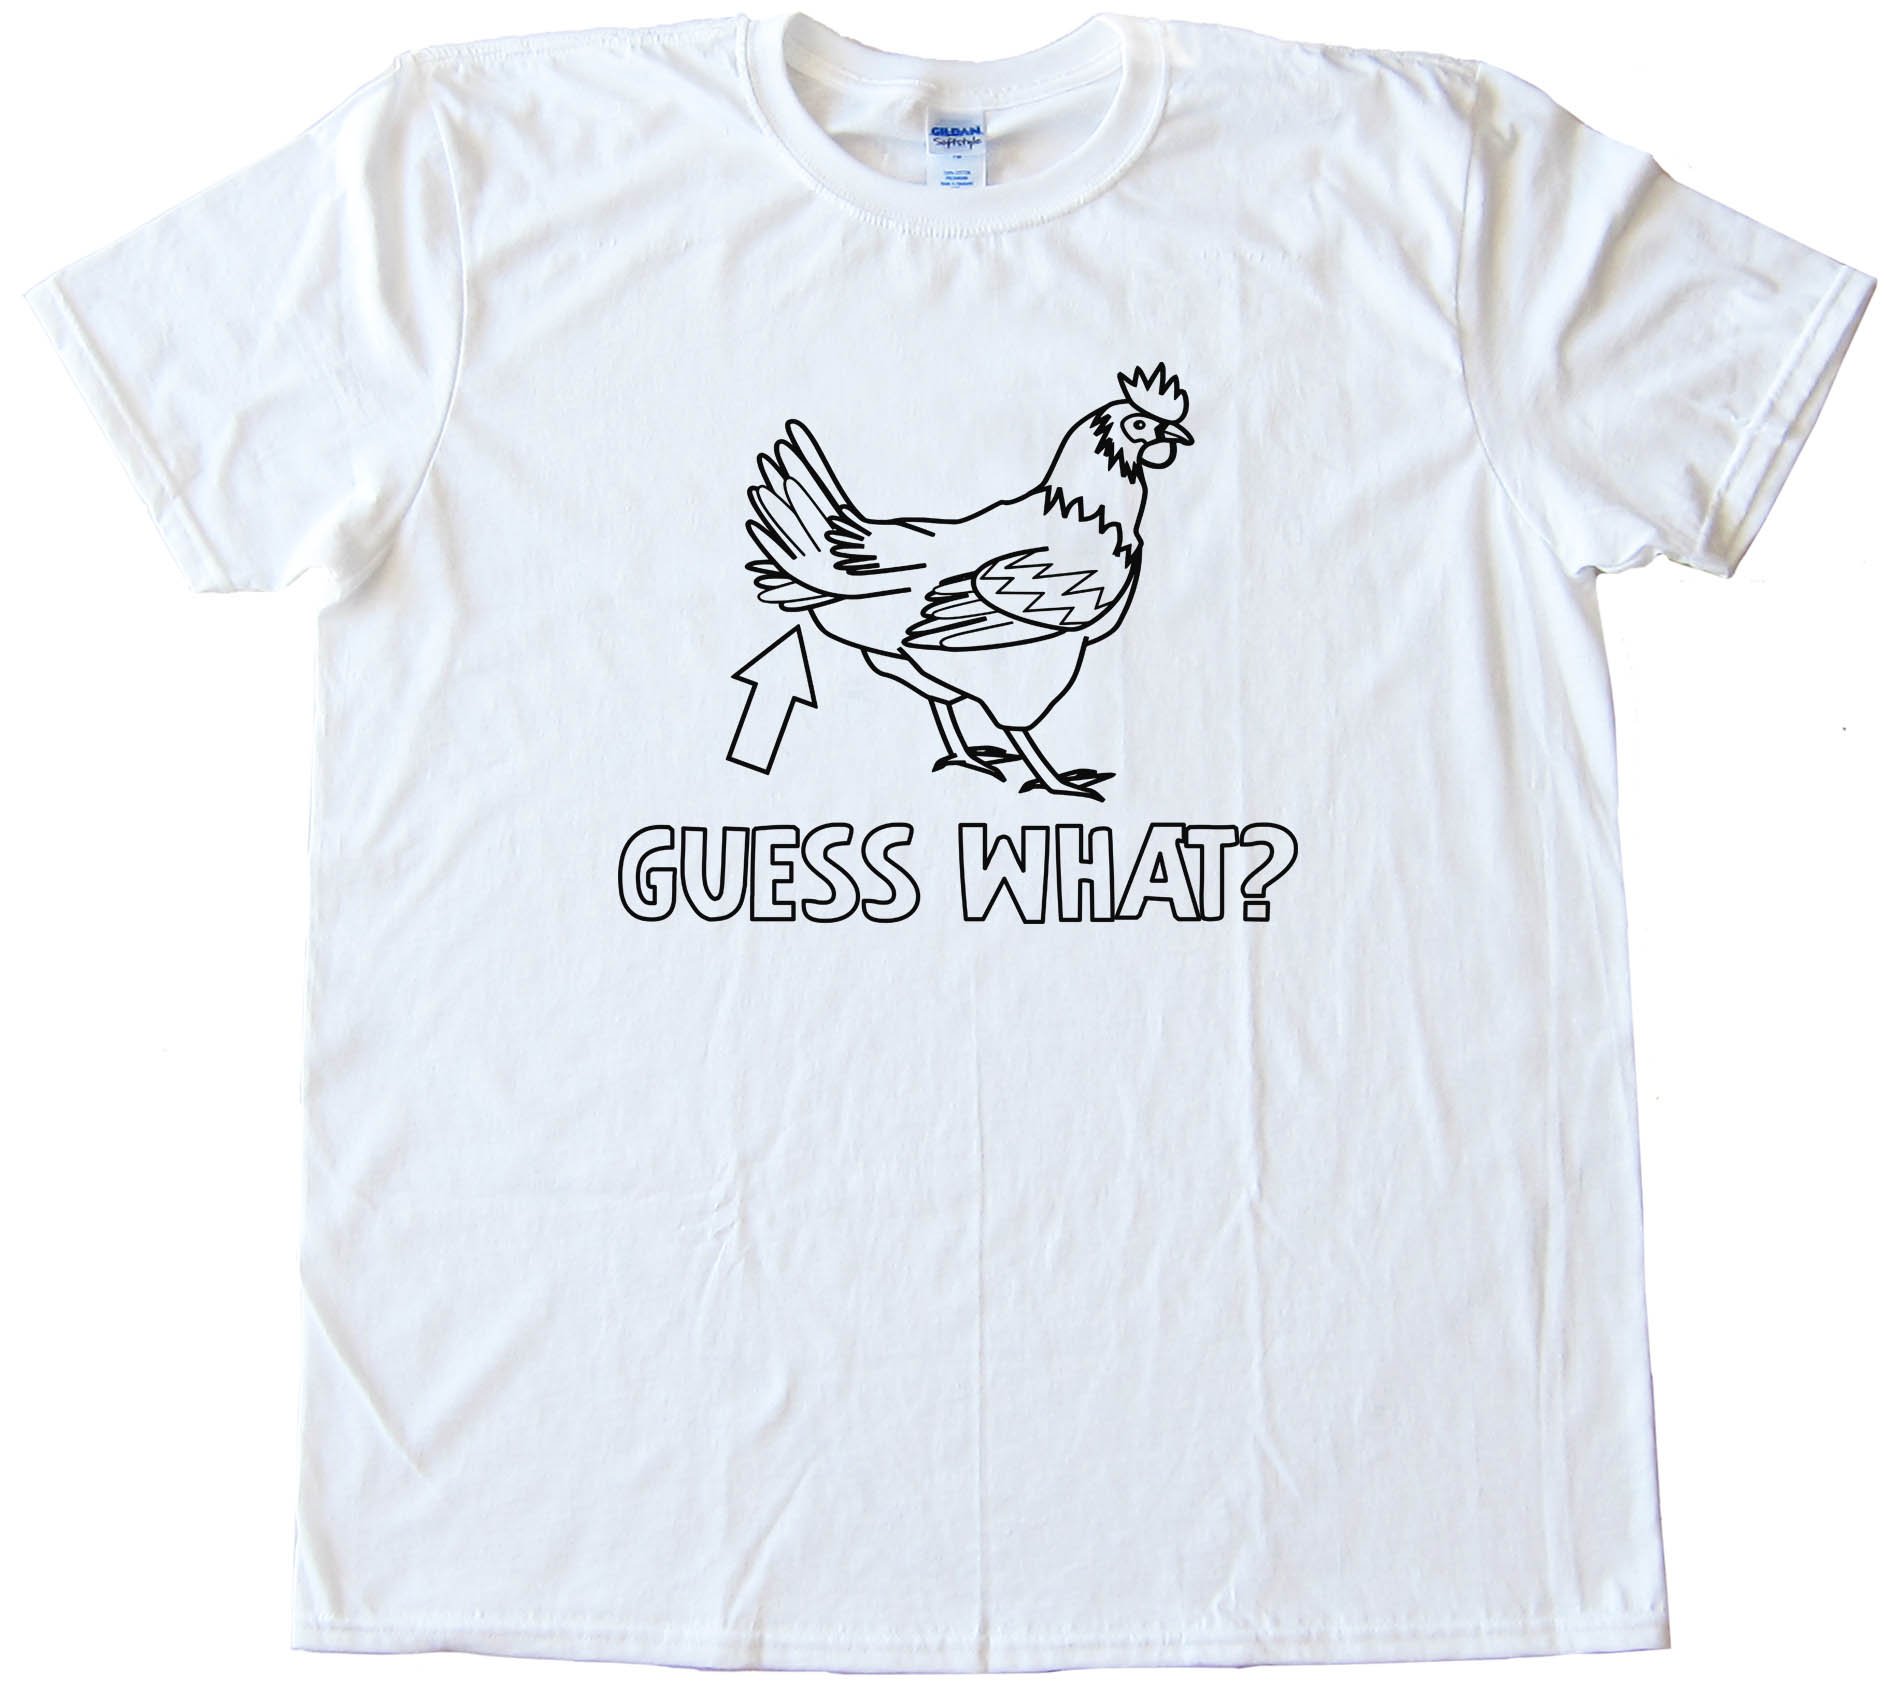 Guess What Chicken Butt - Tee Shirt